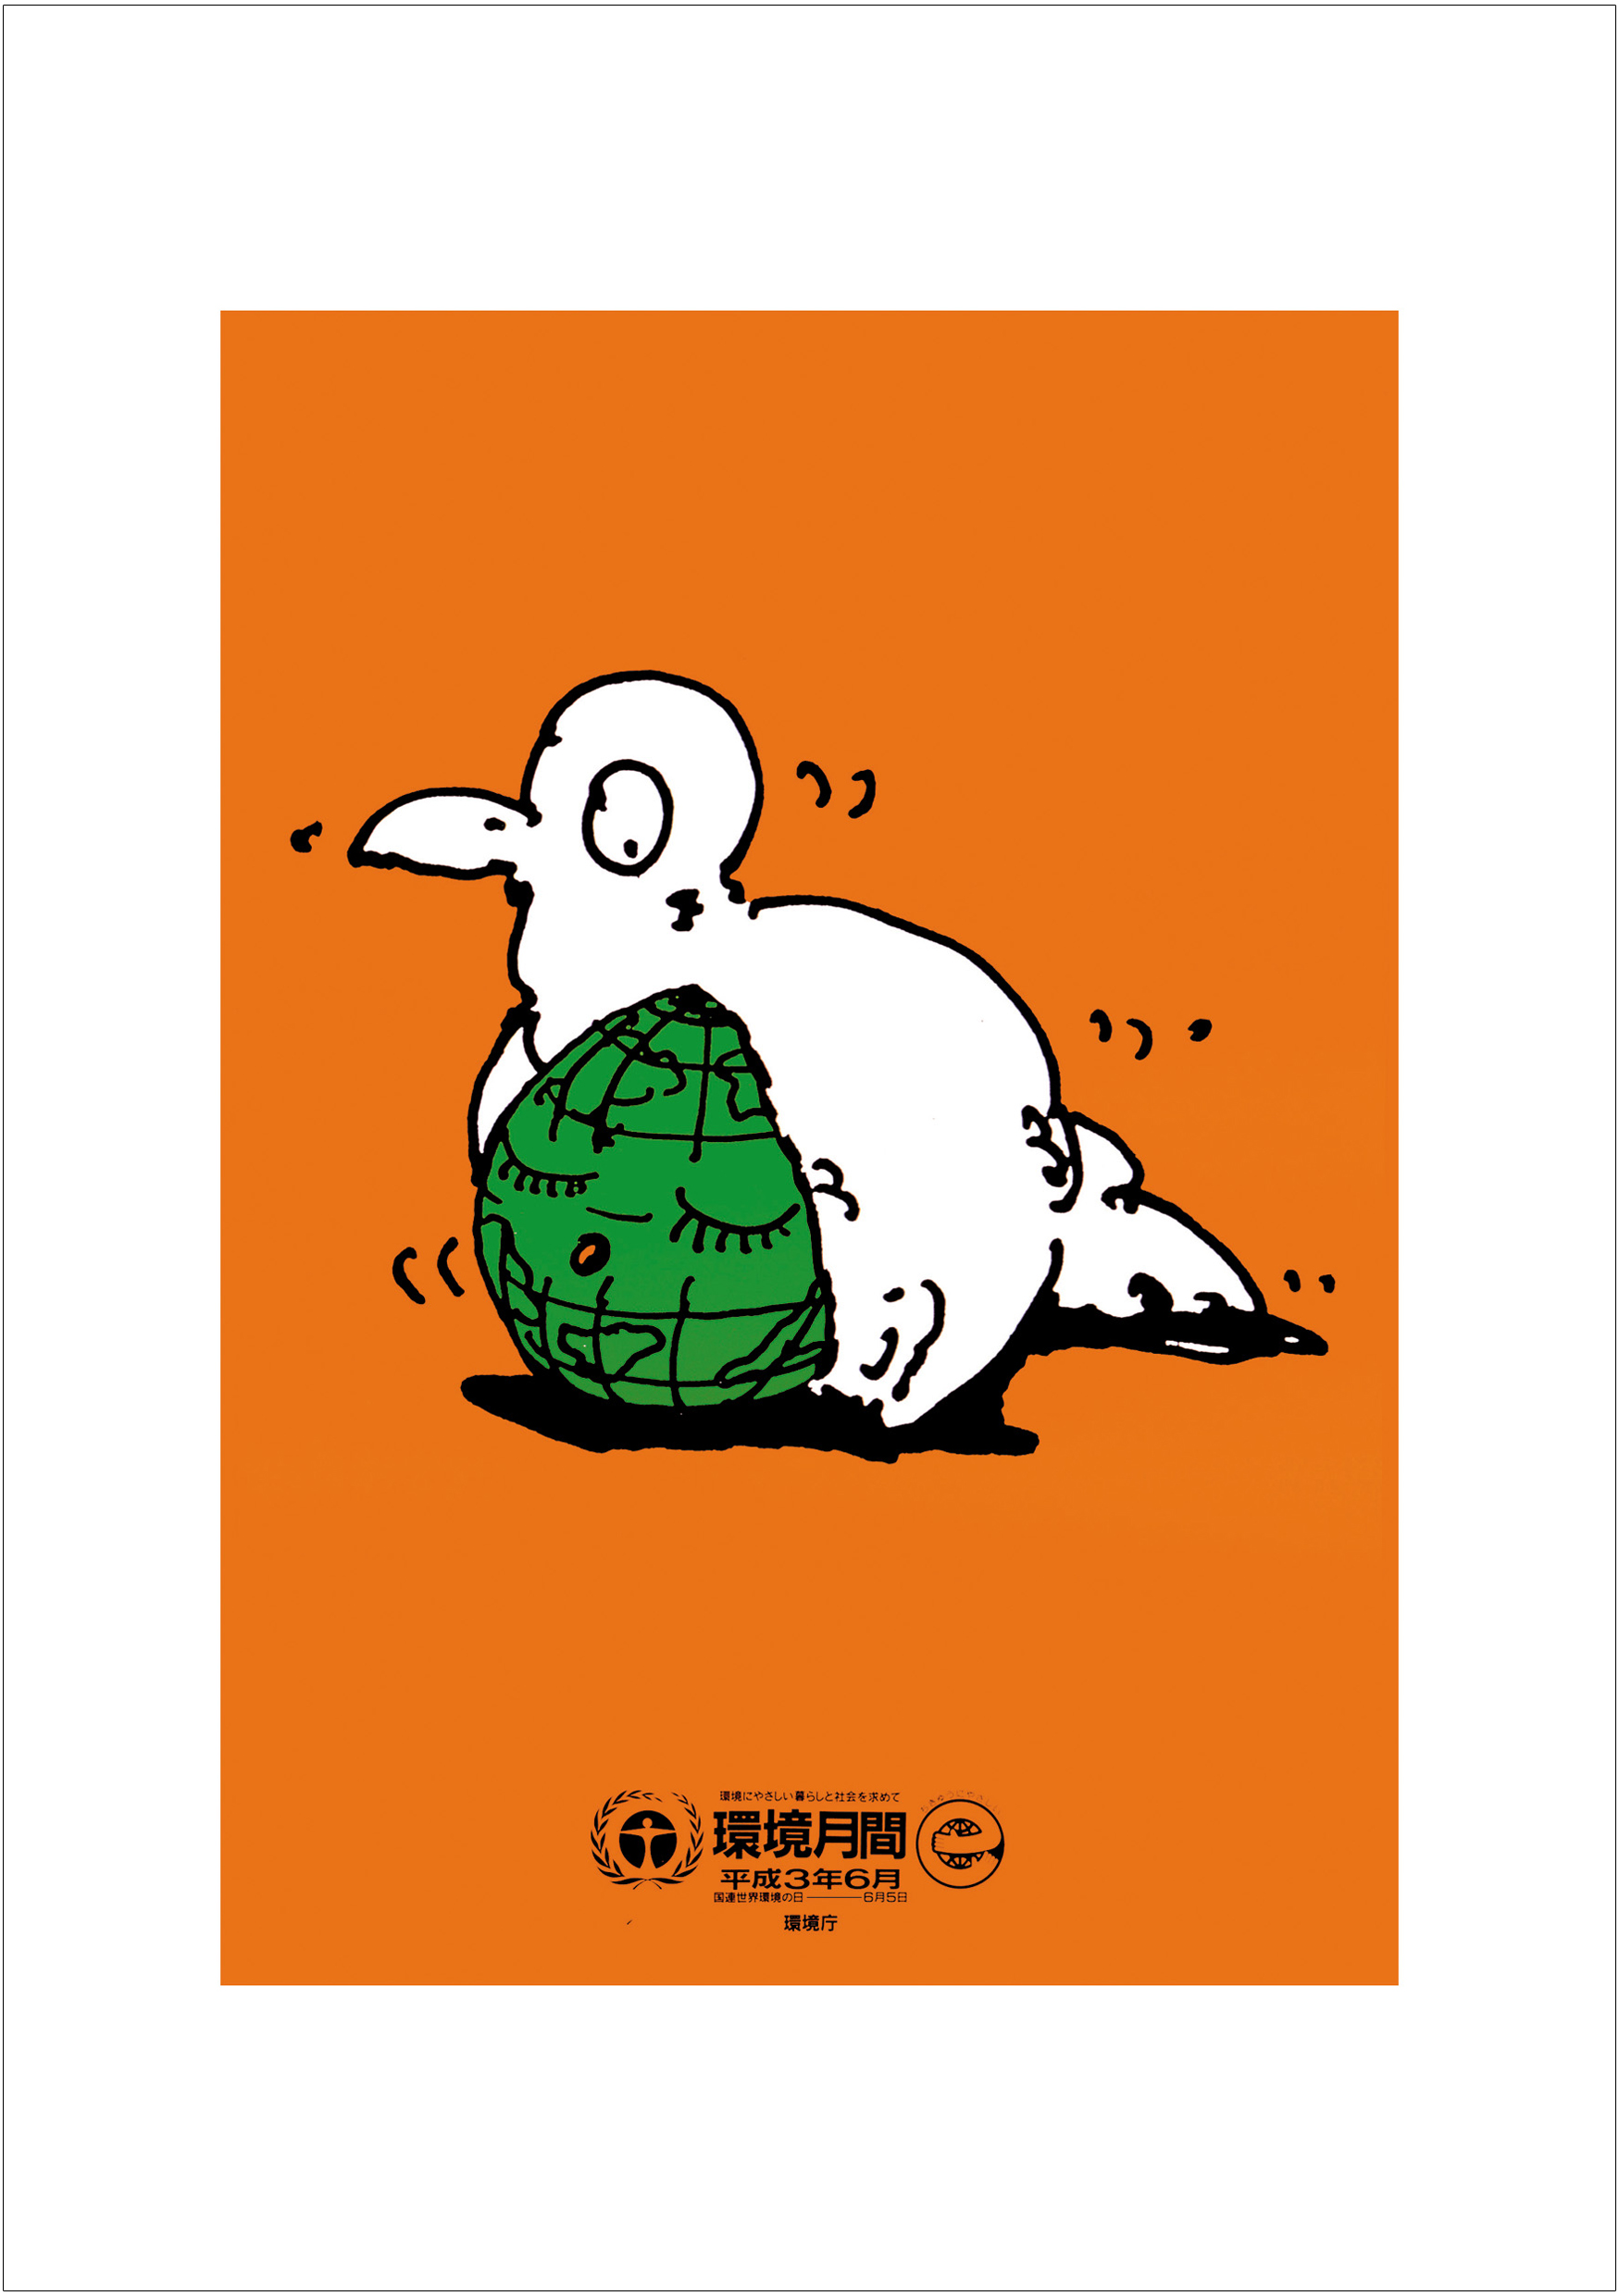 ポスターアーティスト秋山孝が2008年に制作したアートカード「アートカード ポスター 1991 09」